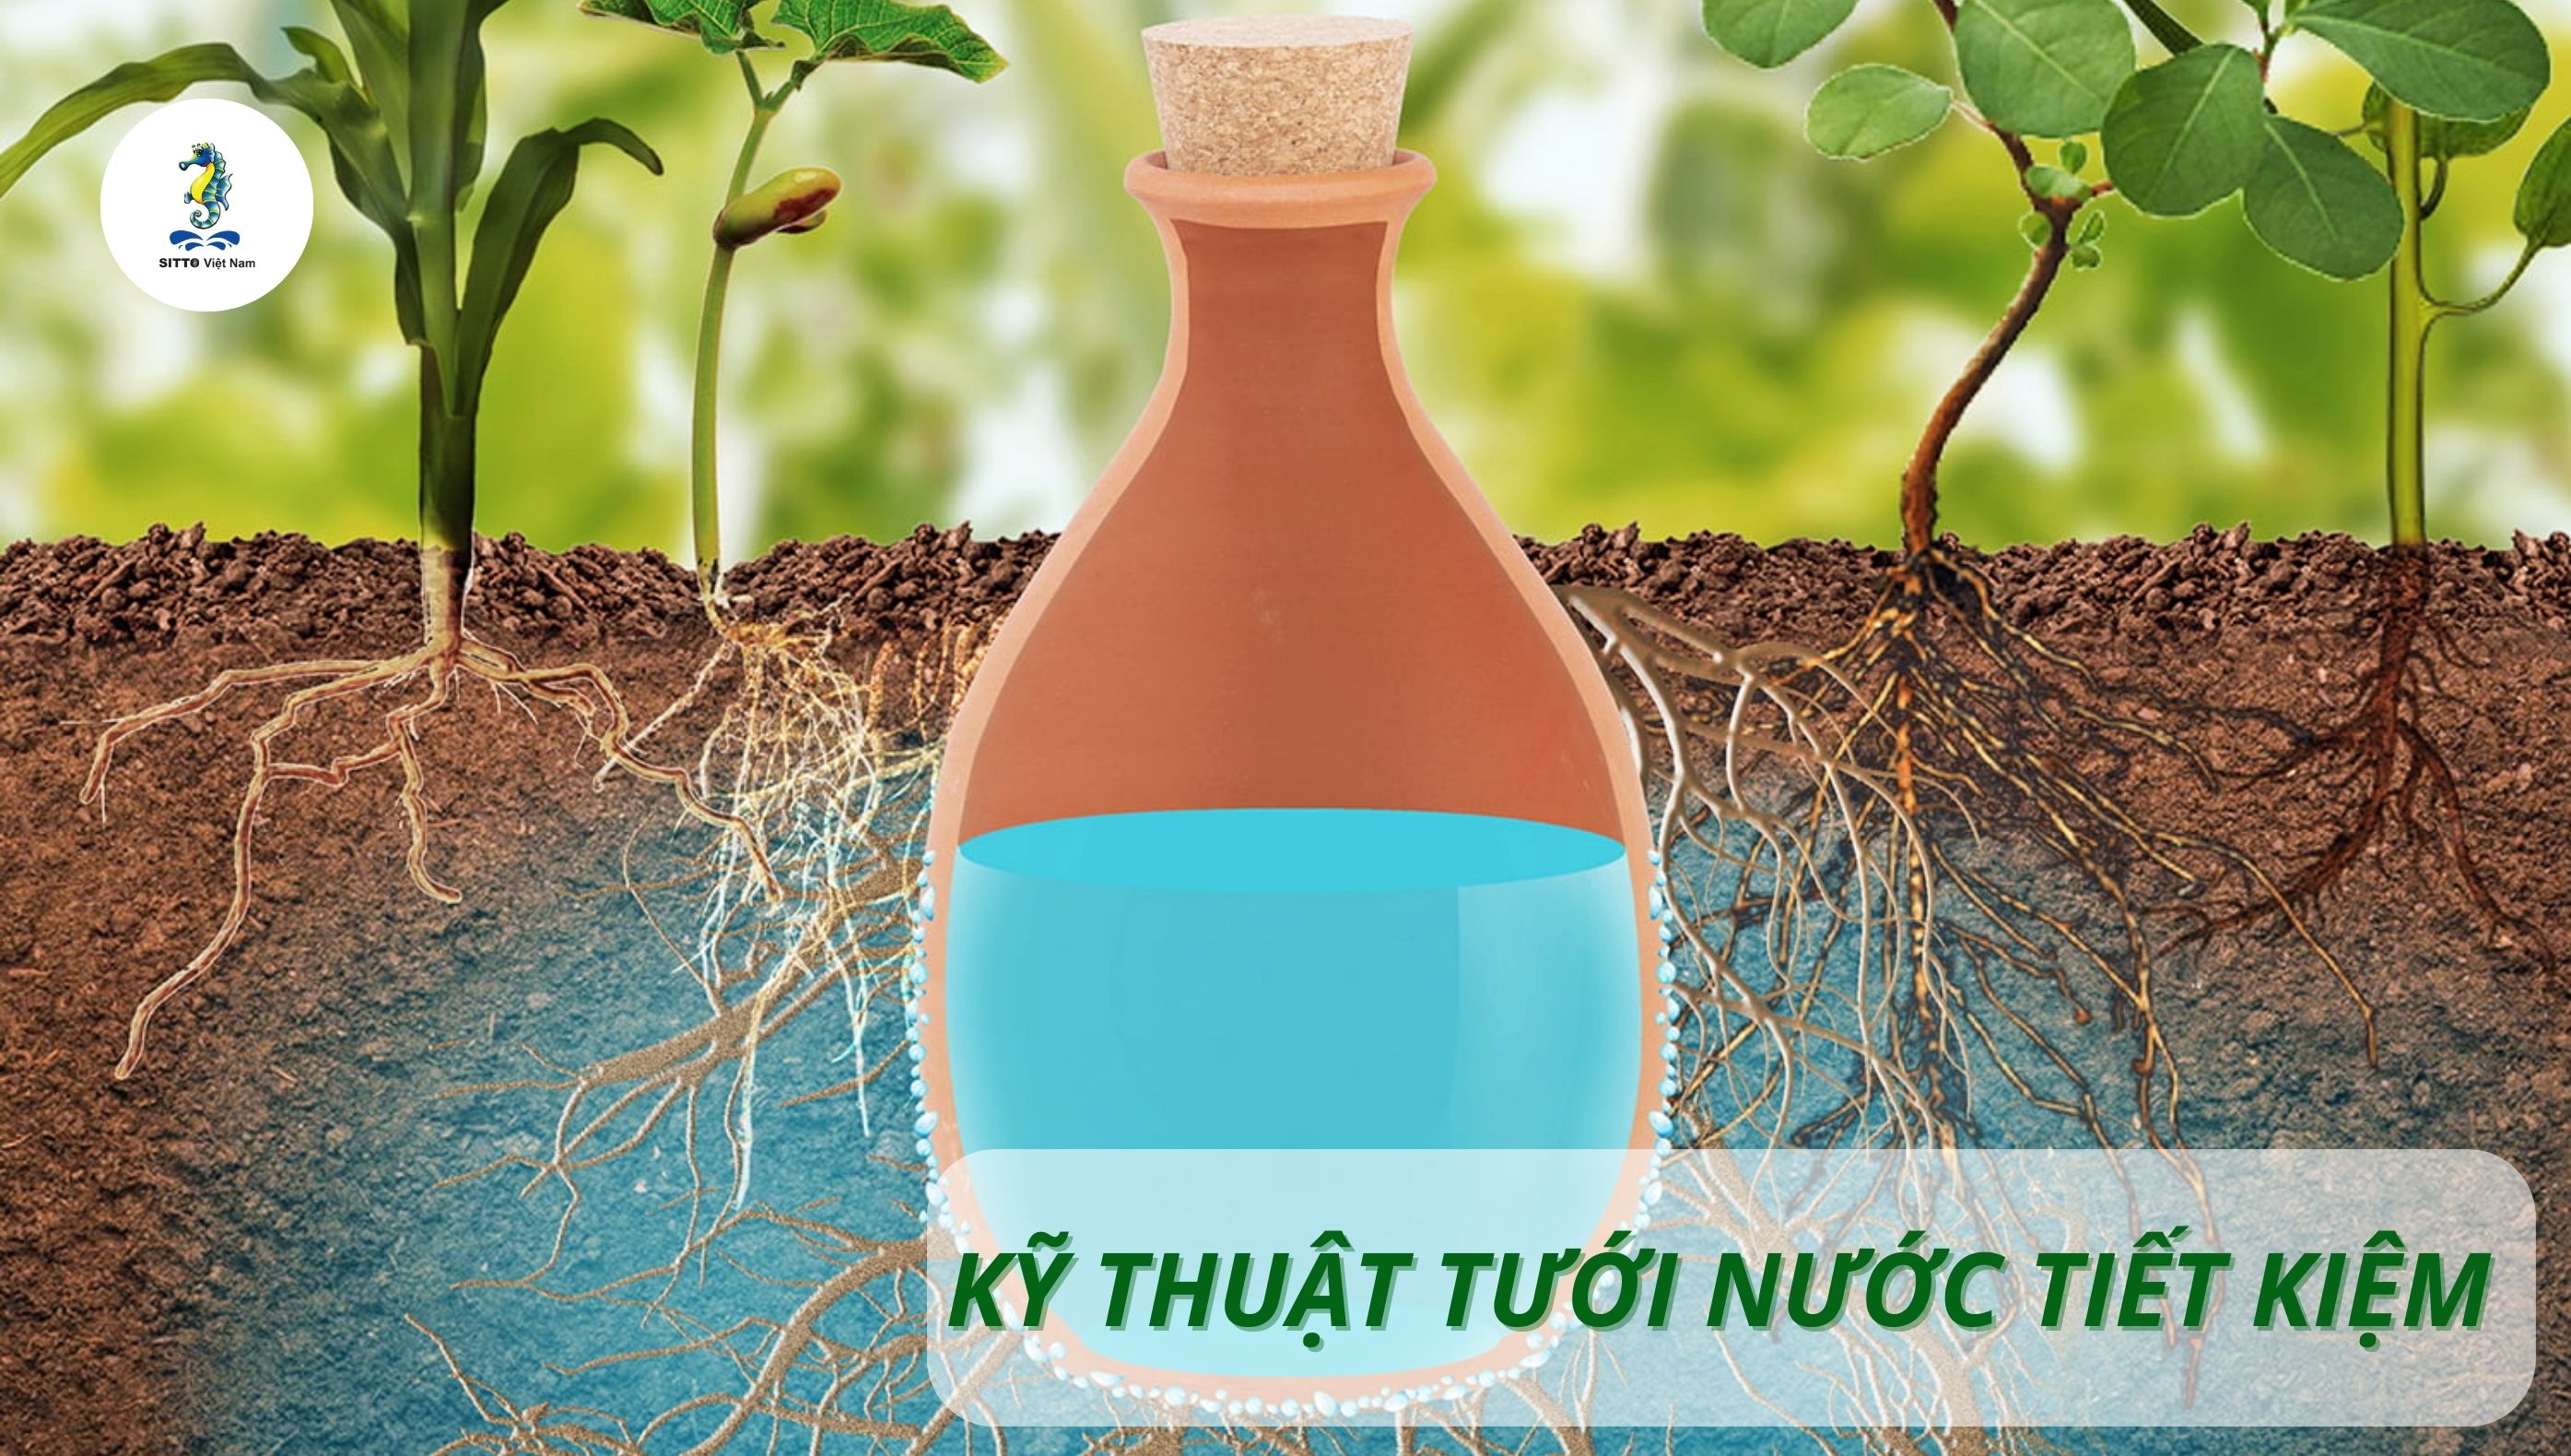 Kỹ thuật tưới nước tiết kiệm phù hợp cho tất cả cây trồng vùng khô hạn